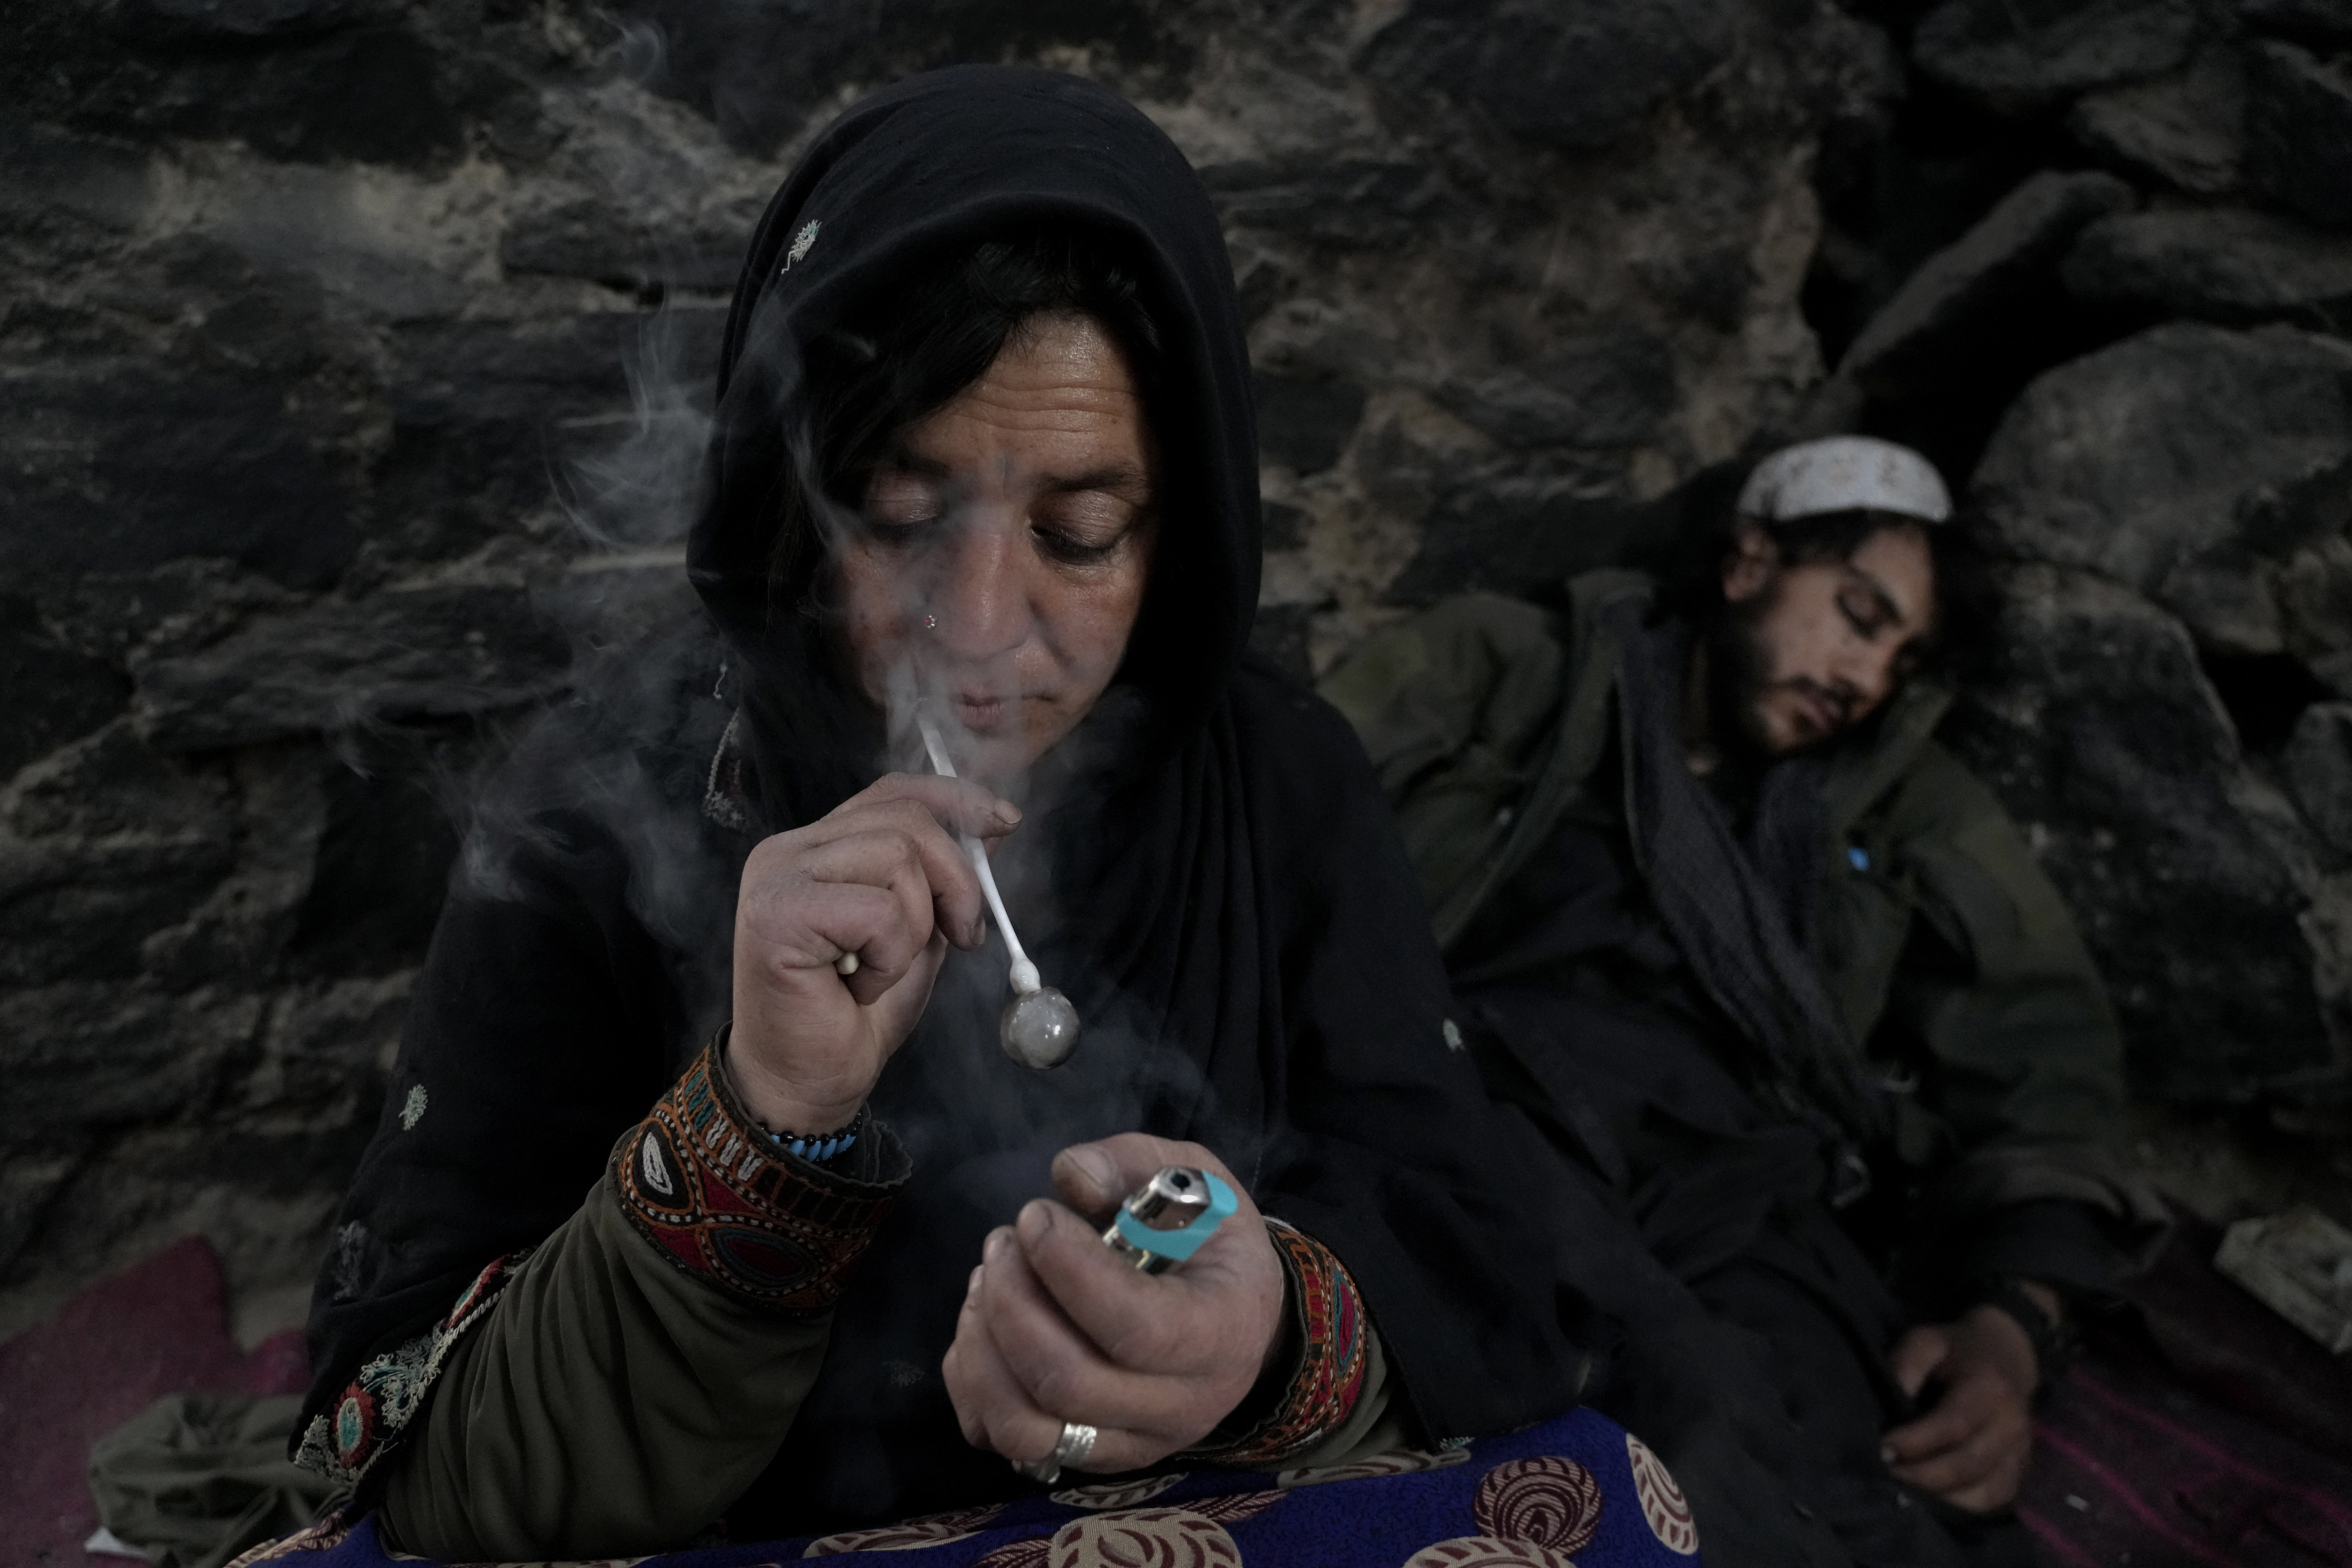 El creciente número de adictos se encuentra en los alrededores de Kabul, viviendo en parques y alcantarillas, bajo los puentes, en laderas abiertas. (AP Photo/Ebrahim Noroozi)